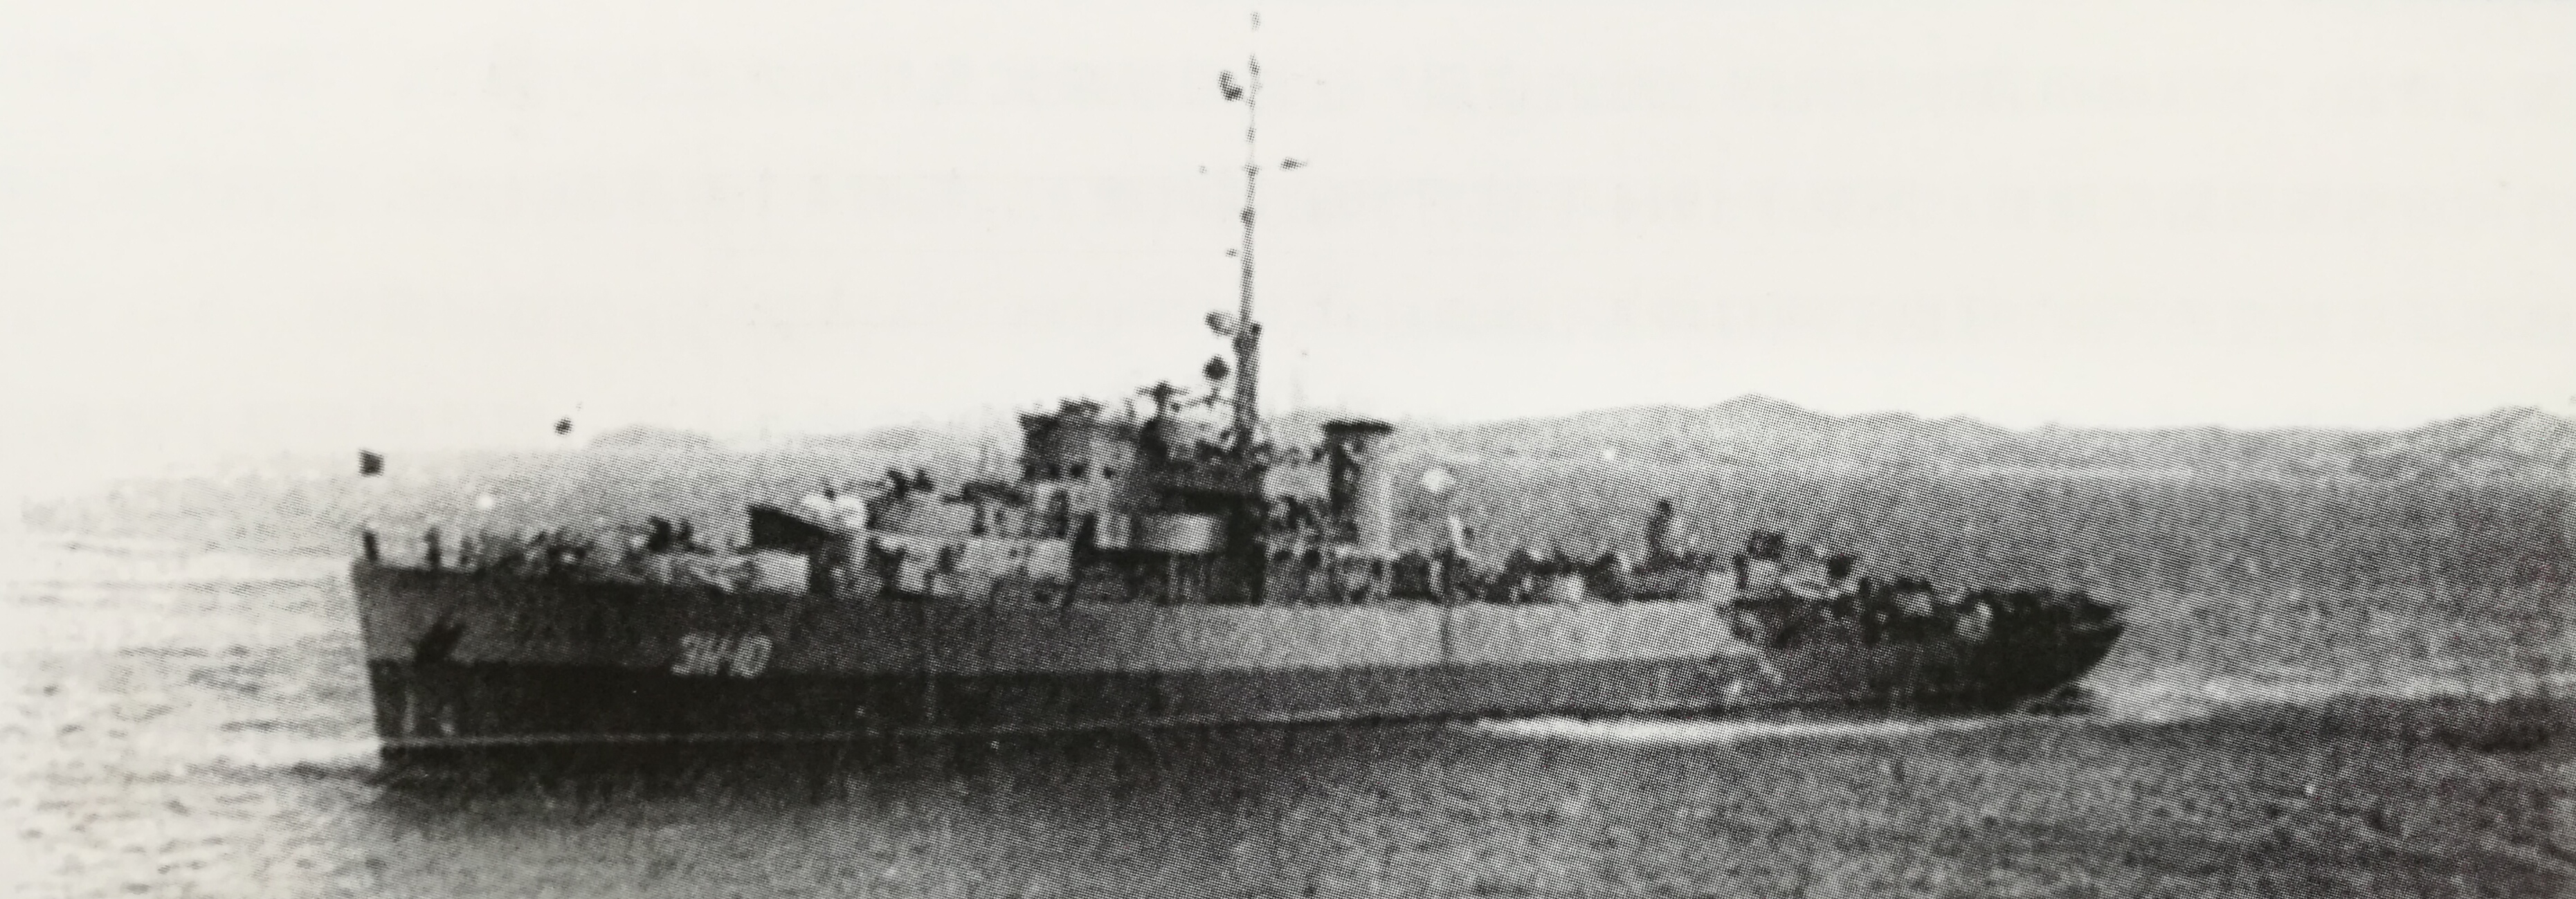 蘇聯護衛艦EK-10號，前身是美國護衛艦奧格登號